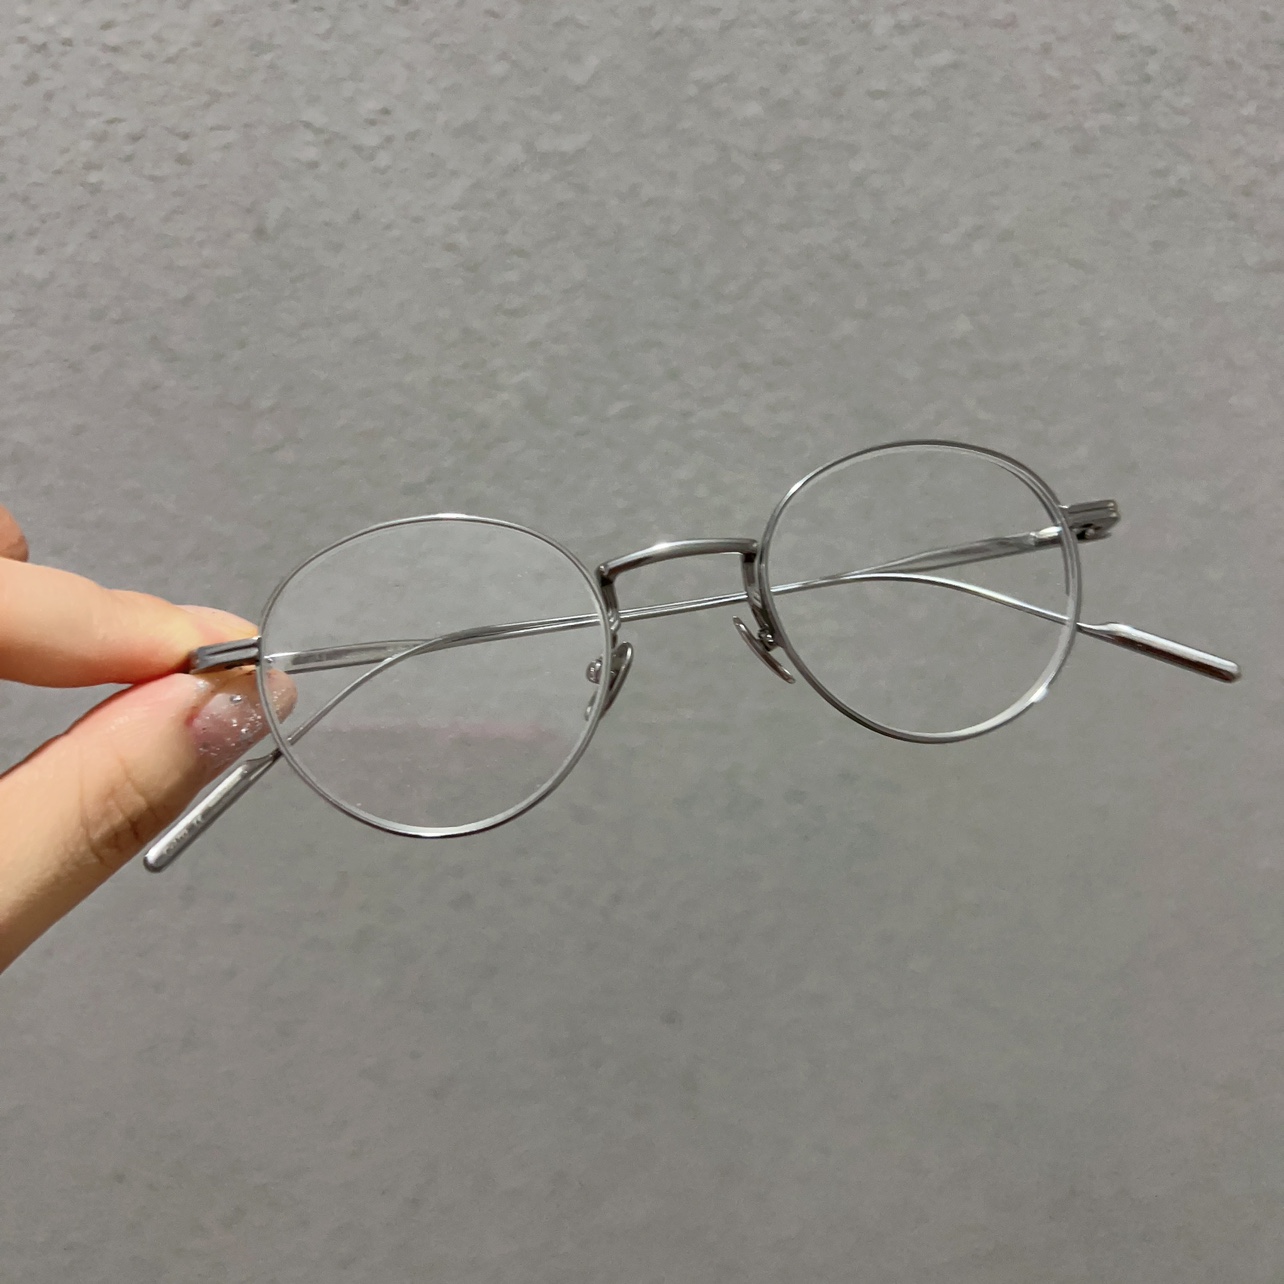 纯钛复古圆框眼镜 超轻 高度数近视镜框 小脸